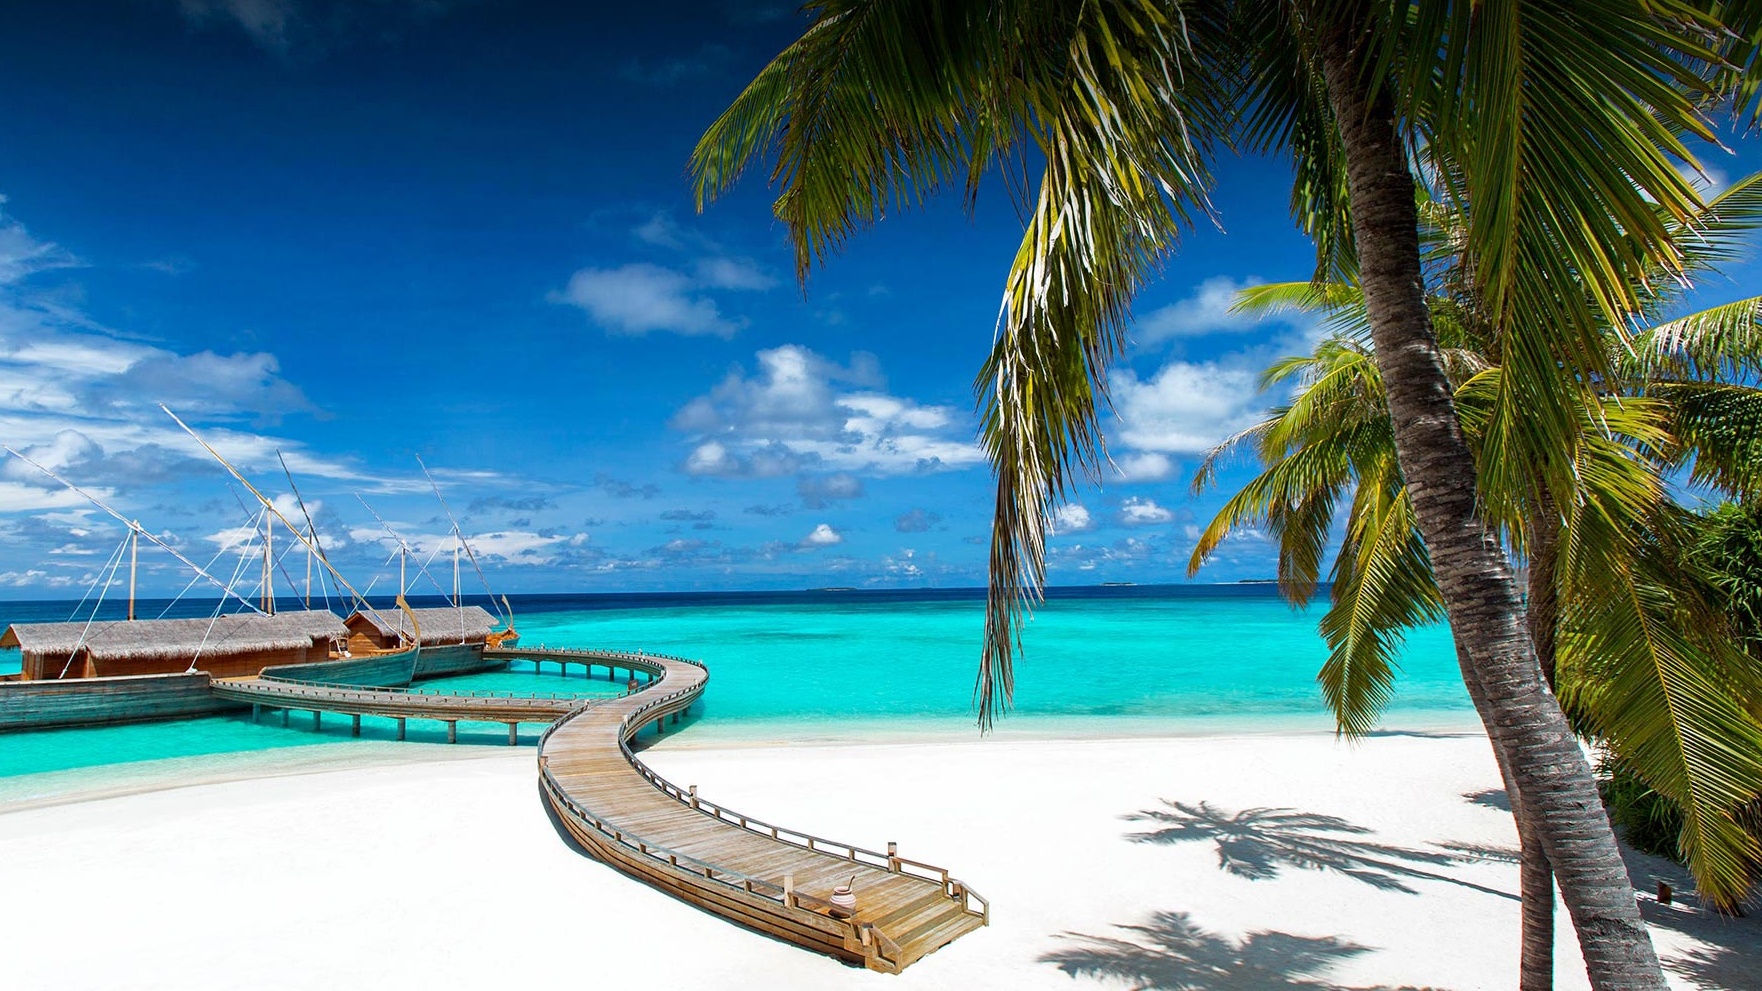 جزر المالديف من أشهر الوجهات السياحية العالمية